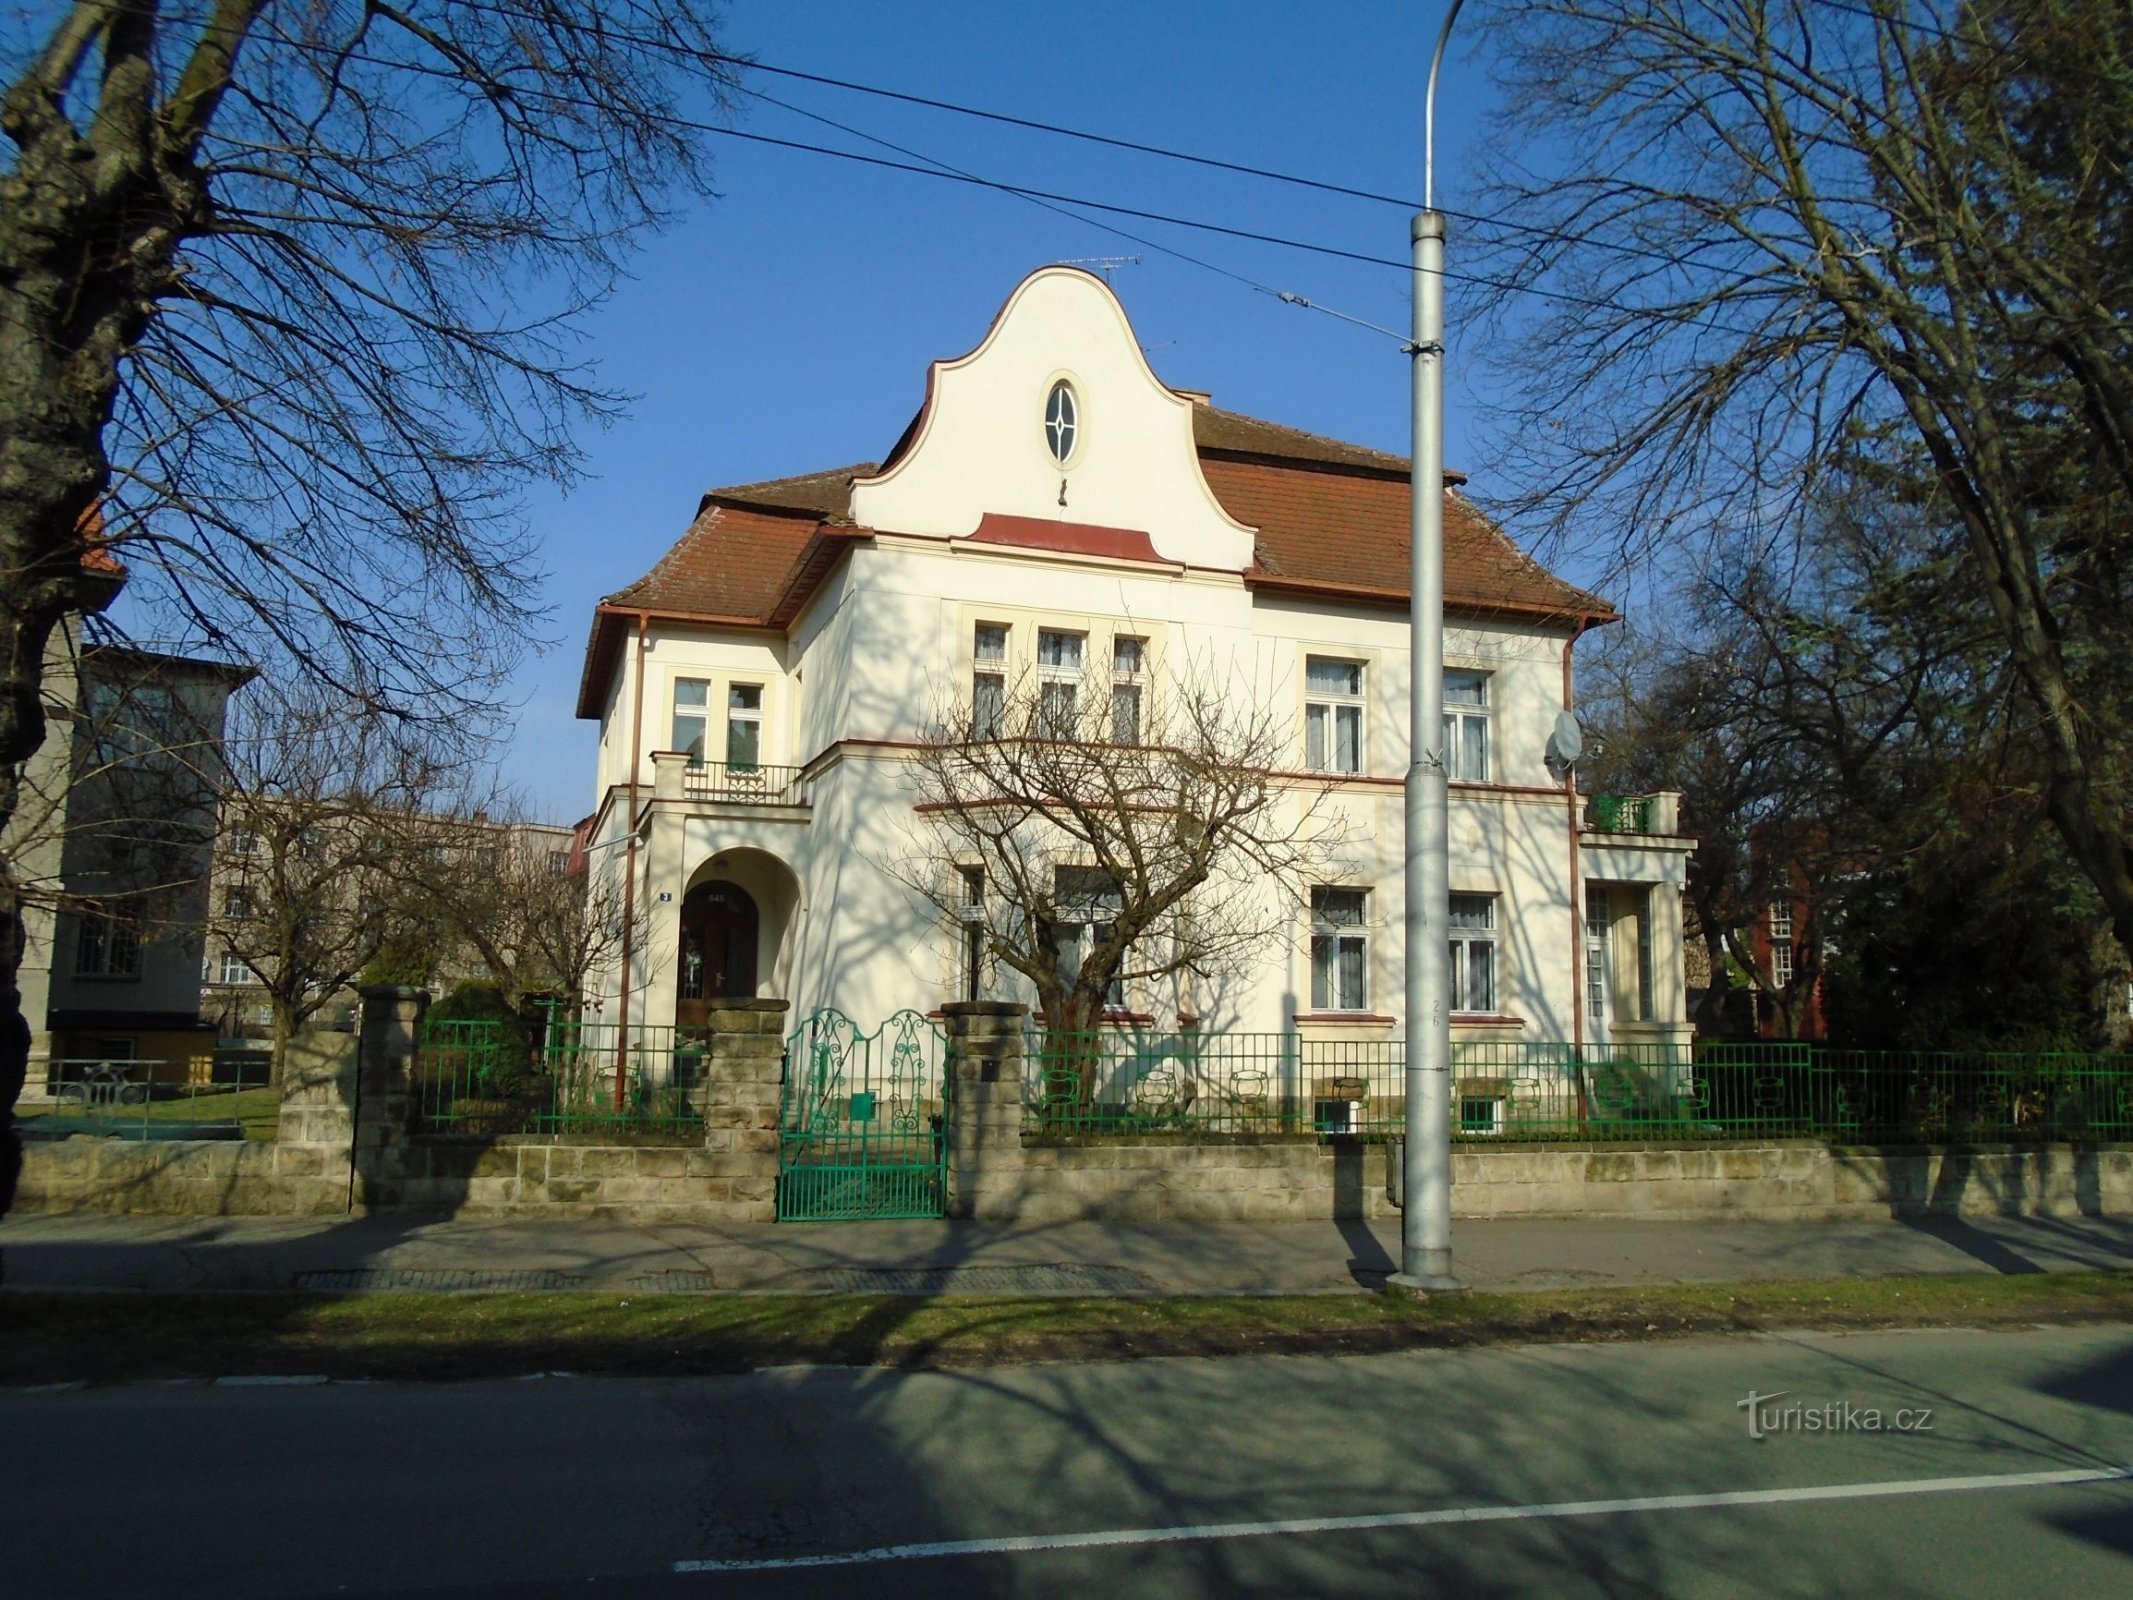 545. számú kastély (Hradec Králové, 1.4.2018. április XNUMX.)